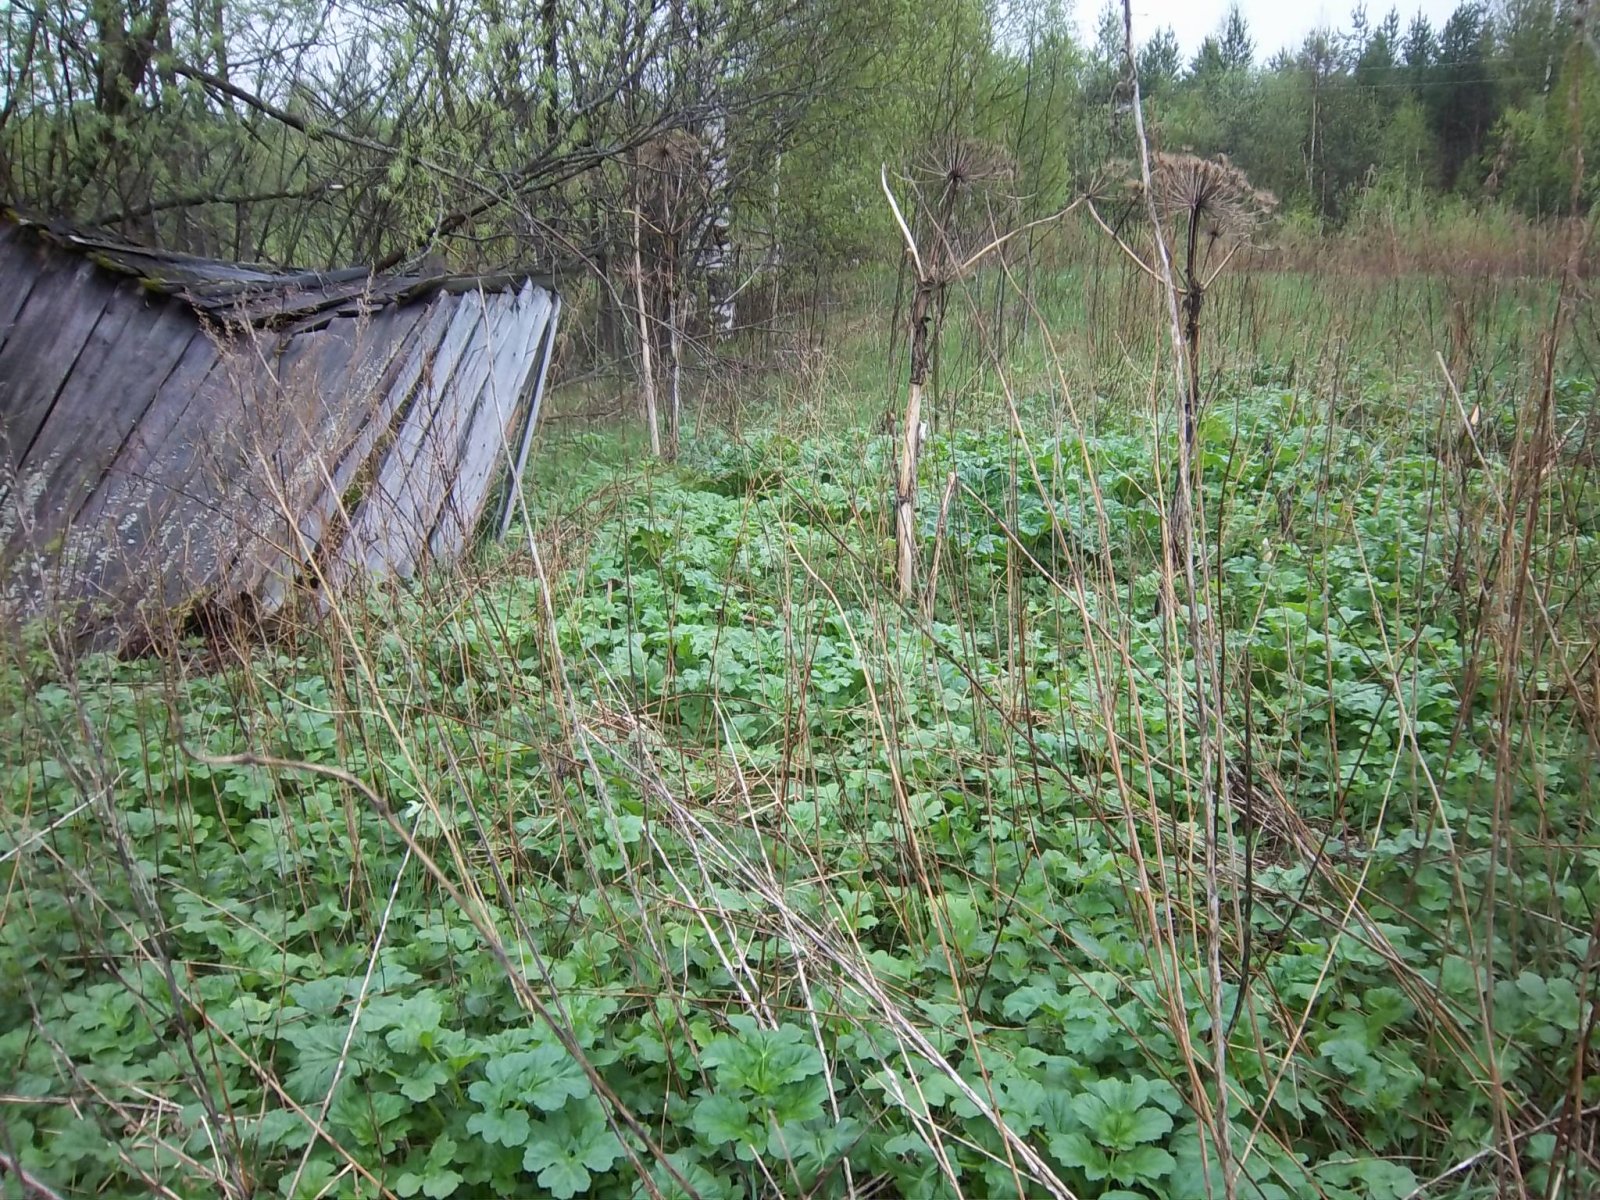 Начало отрастния борщевика, заброшенный дачный участок. Архангельская область